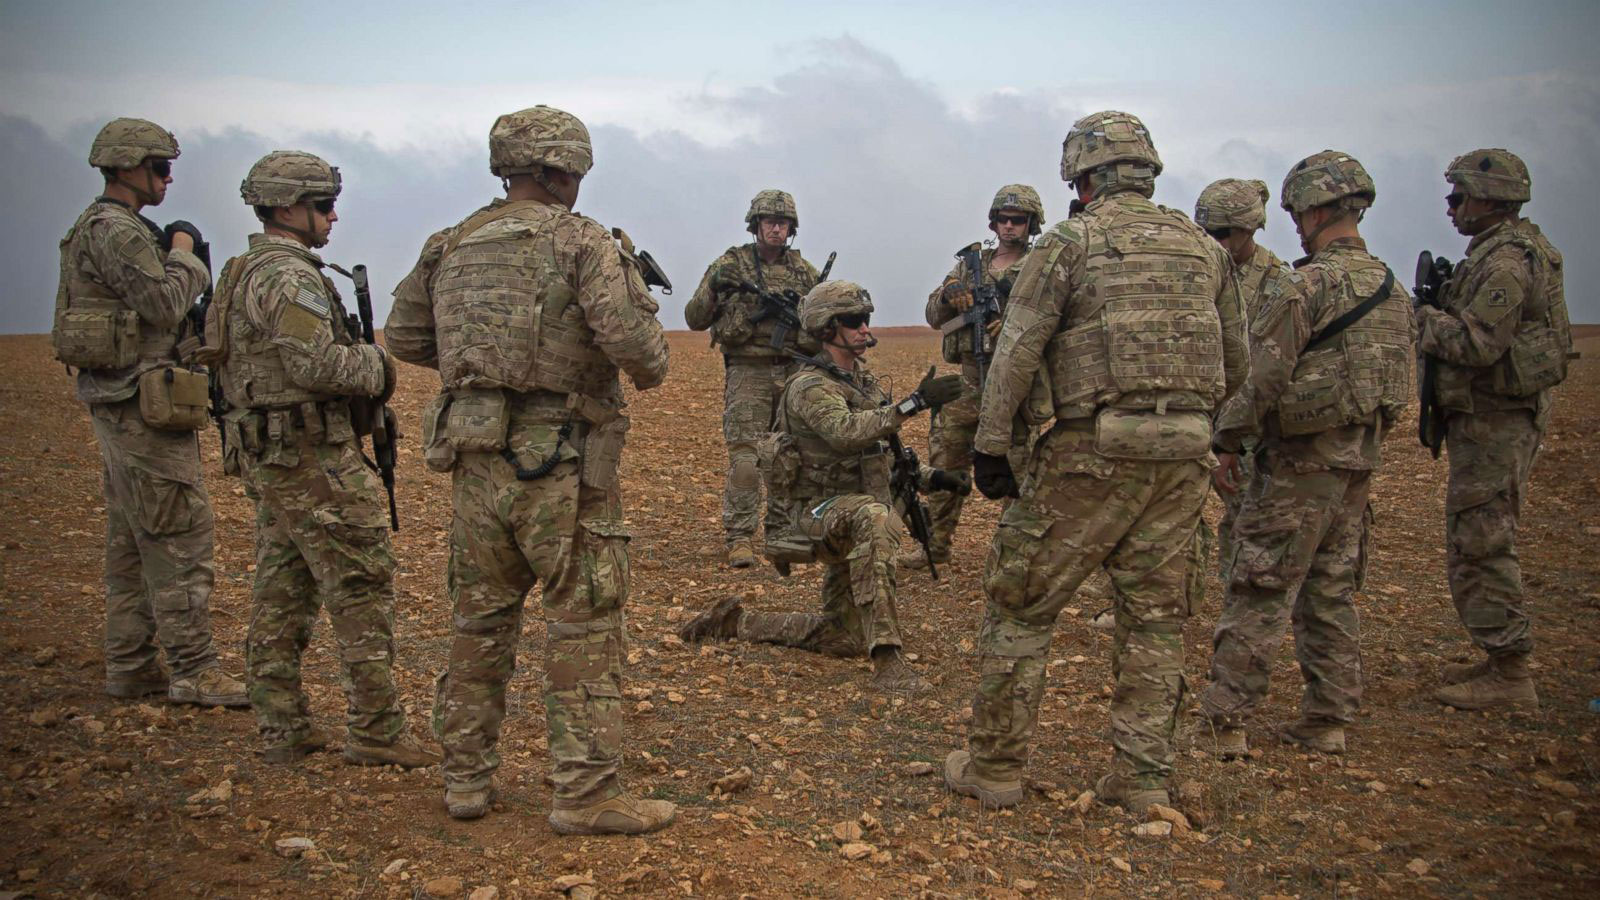 أمريكا ترسل 300 جندي إضافي إلى الشرق الأوسط